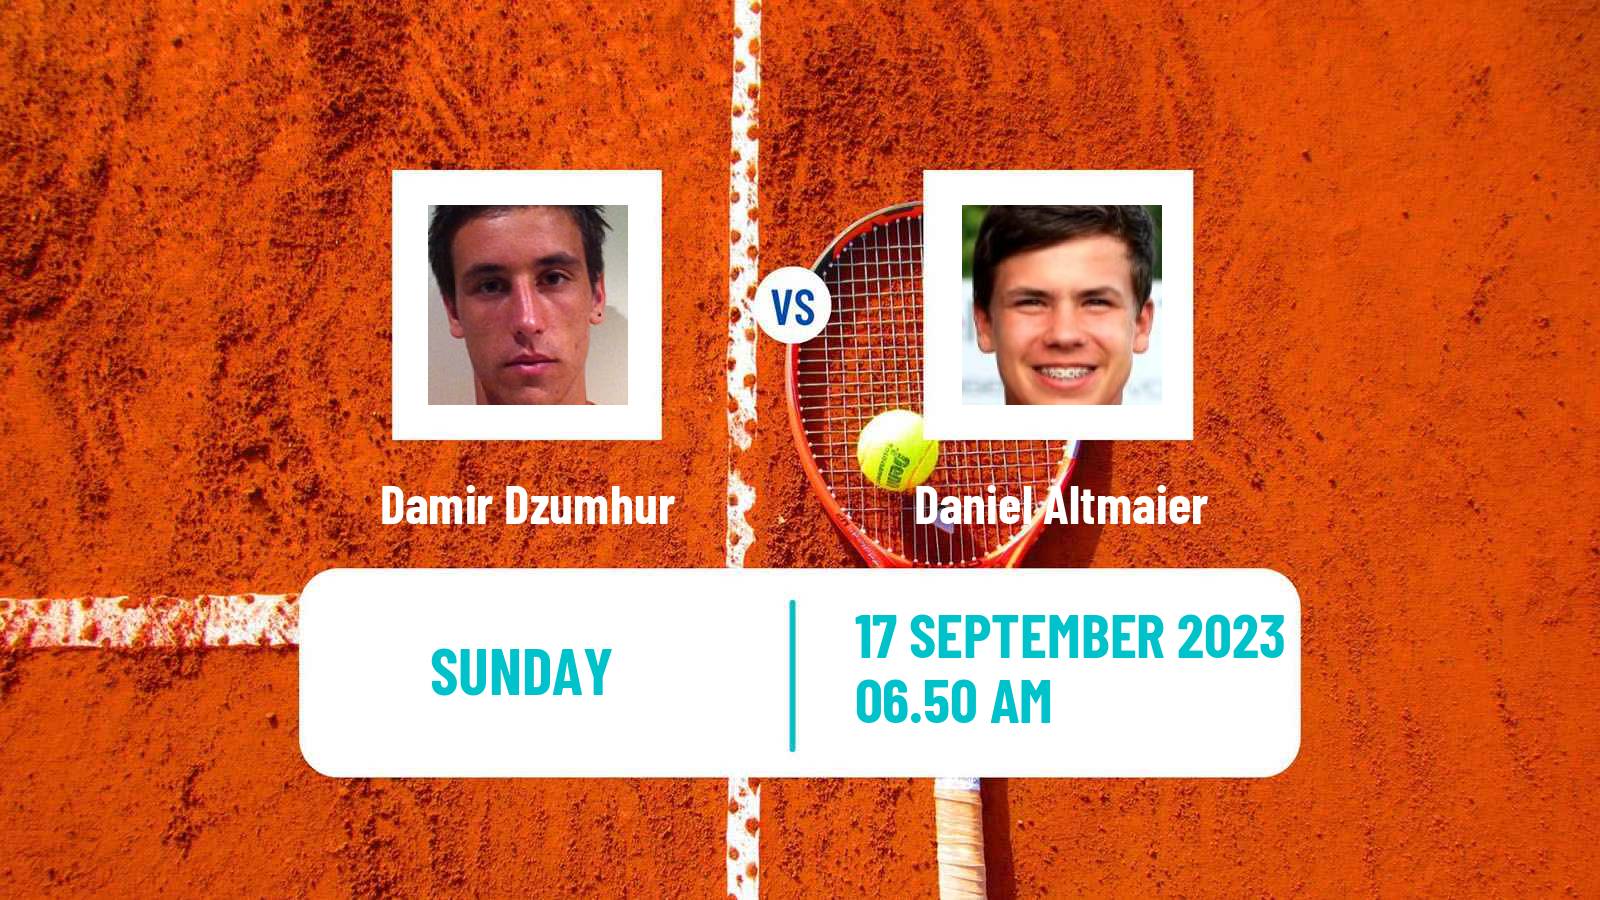 Tennis Davis Cup World Group I Damir Dzumhur - Daniel Altmaier